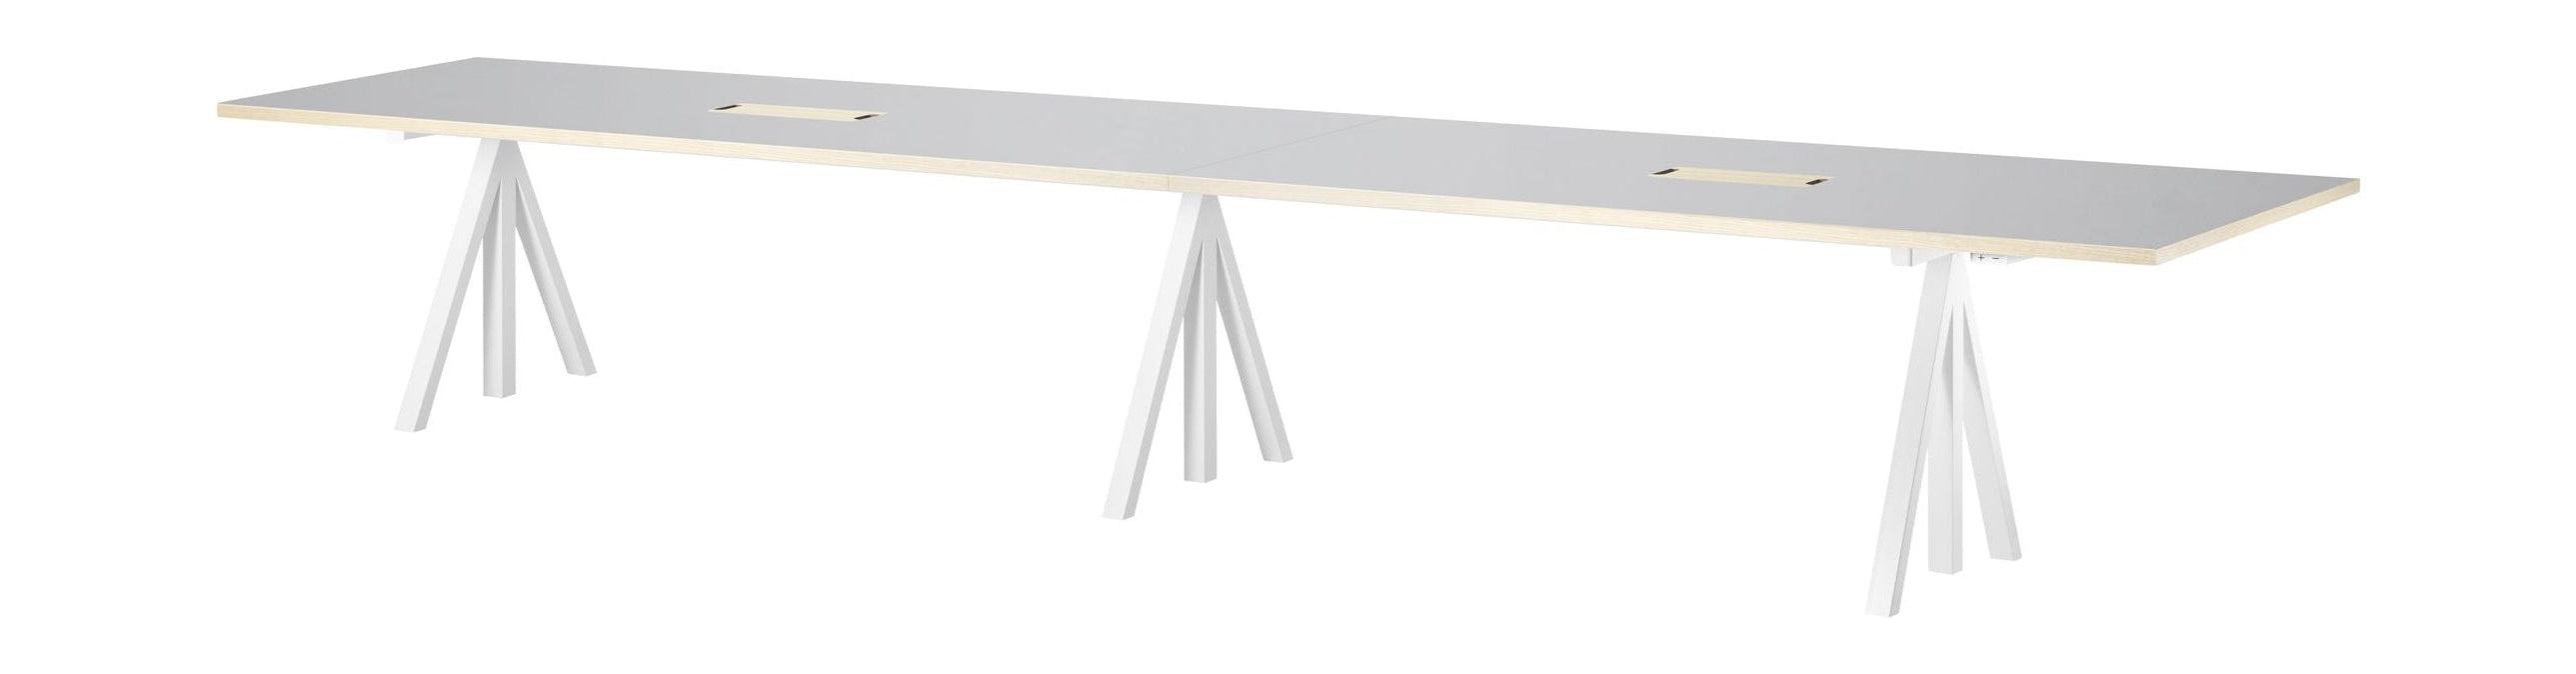 Tabla de conferencia ajustable de altura de muebles de cuerda 90x180 cm, linóleo gris claro